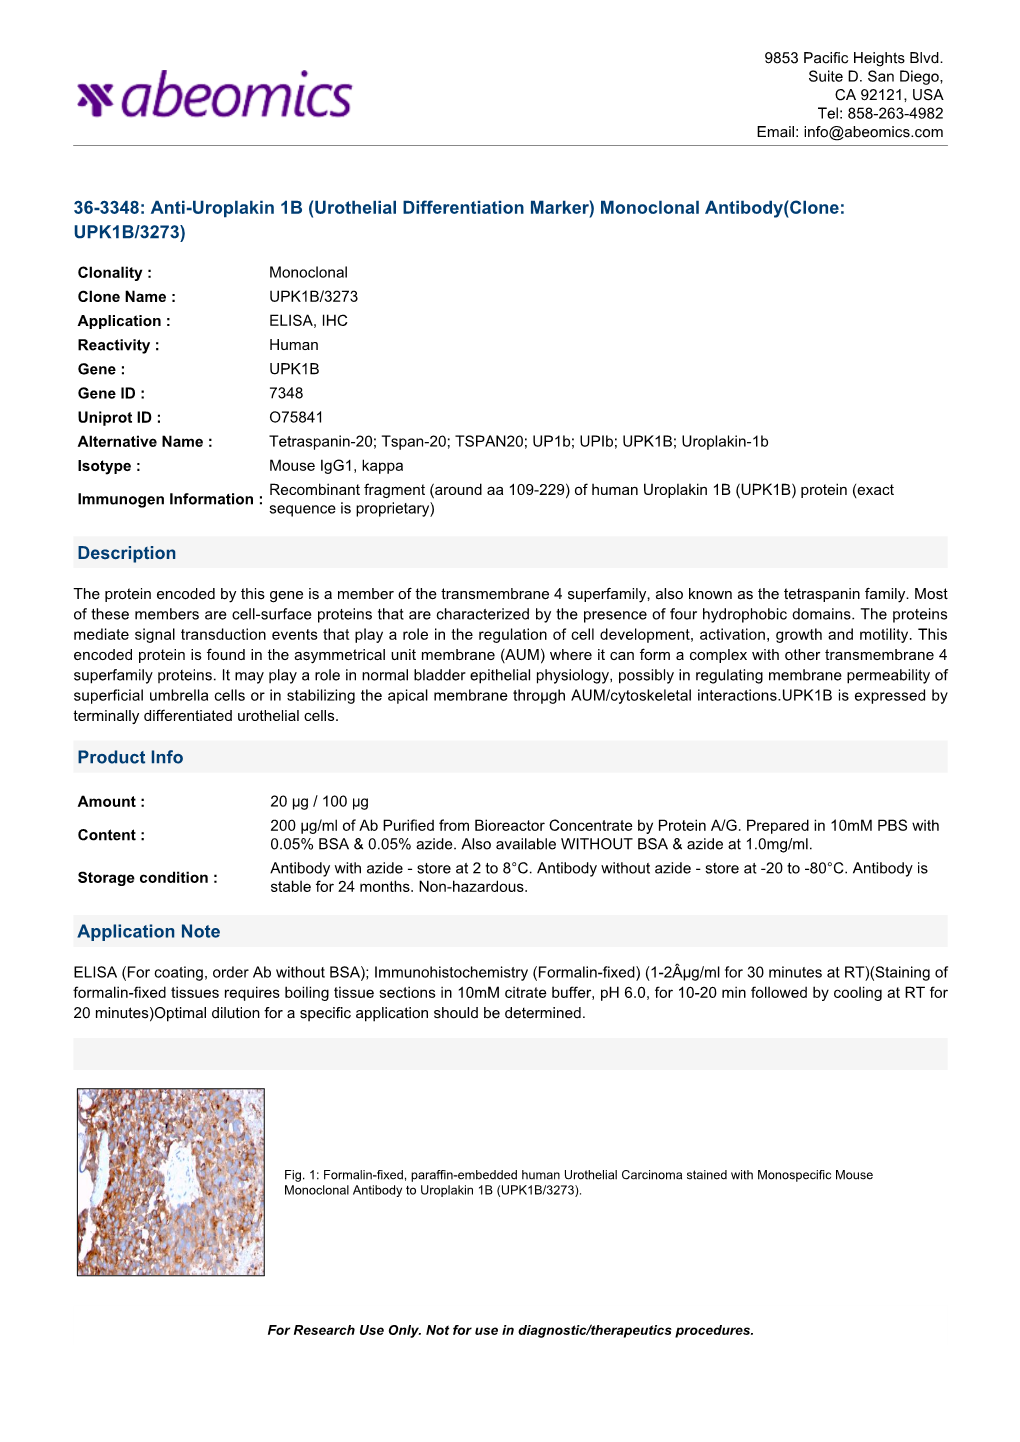 Monoclonal Antibody(Clone: UPK1B/3273)